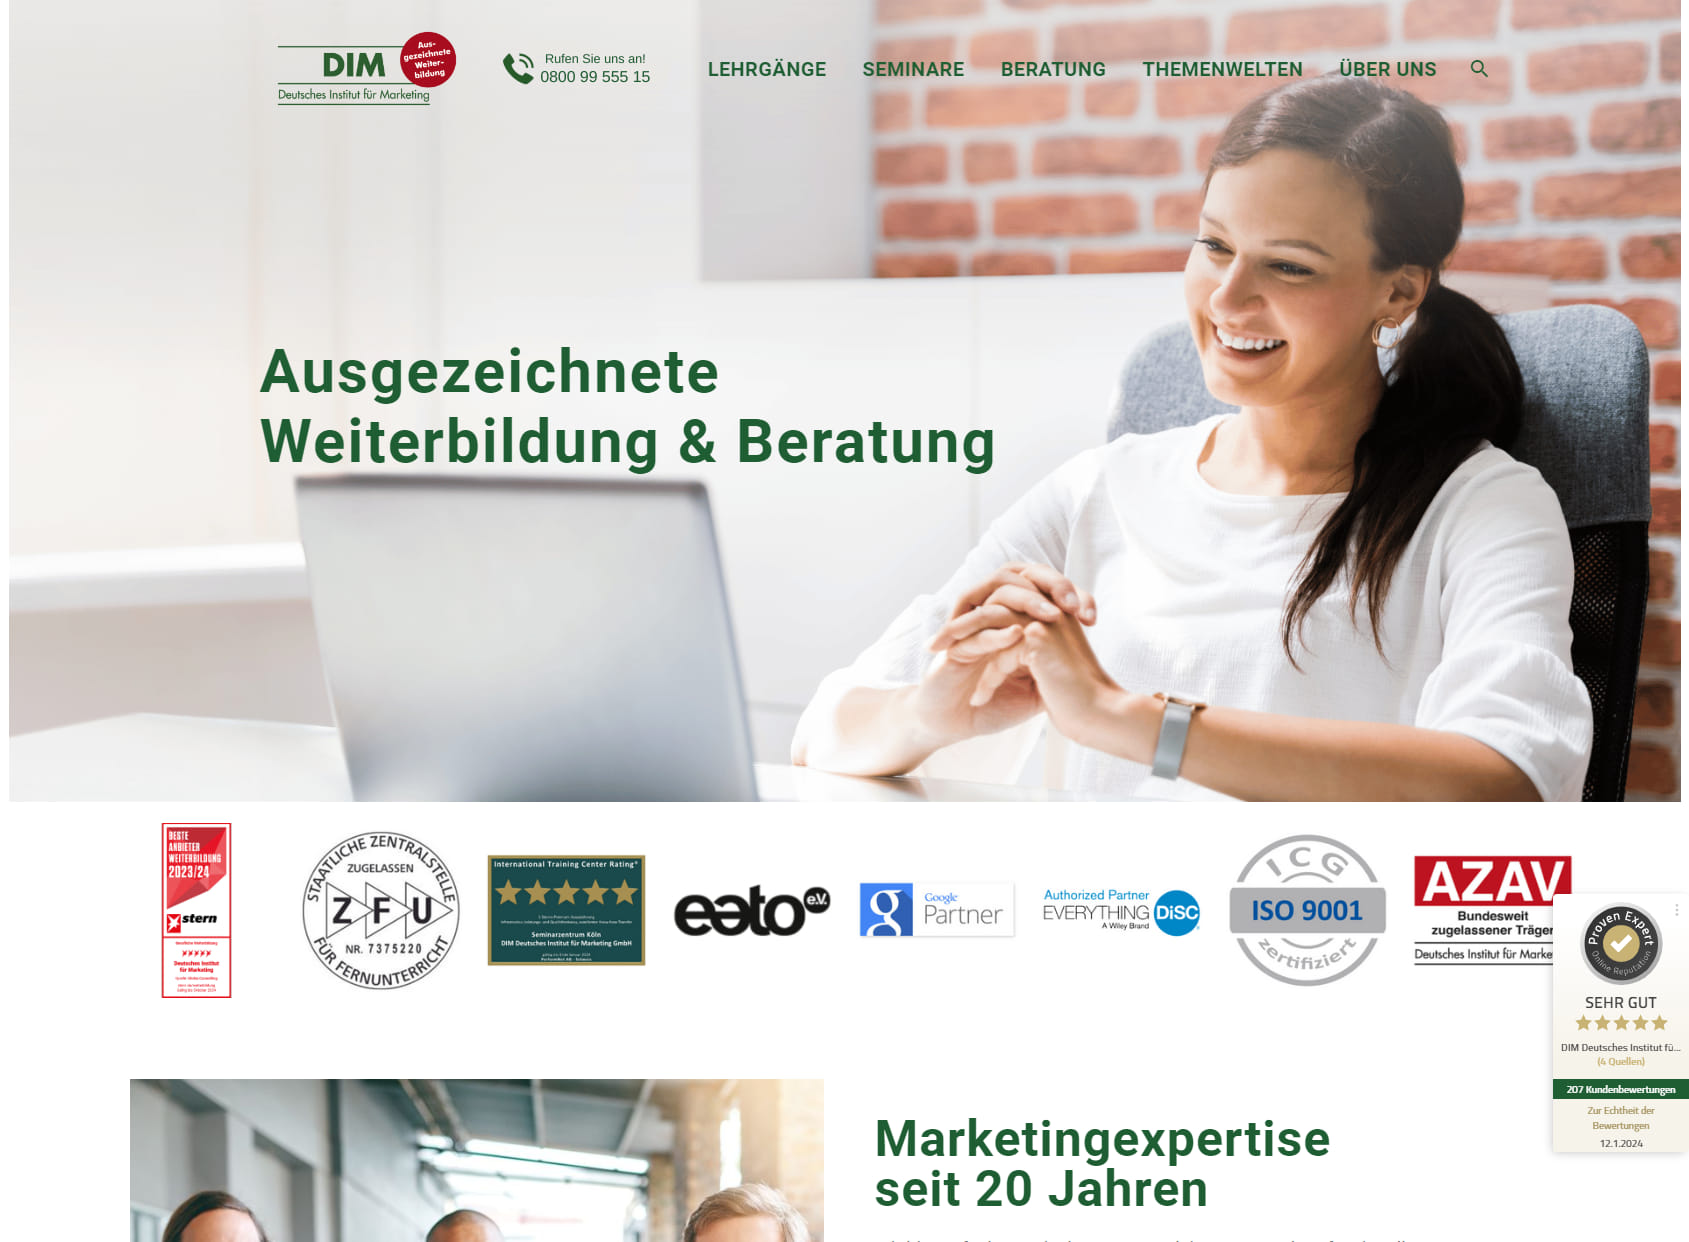 Deutsches Institut für Marketing GmbH